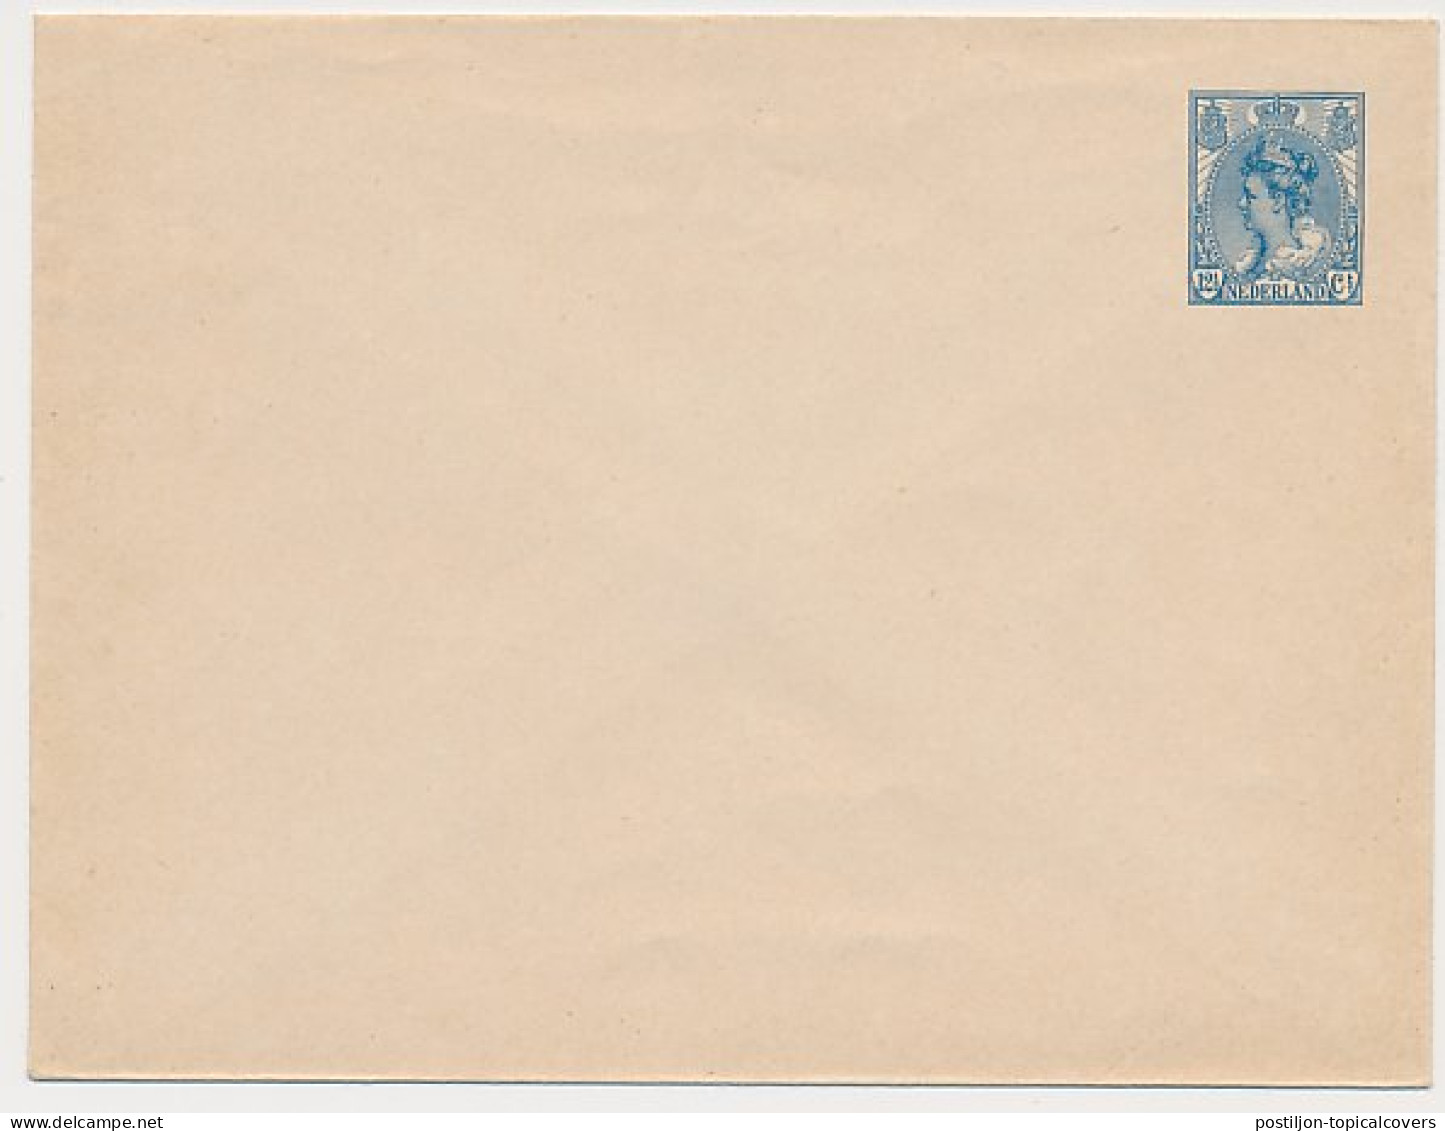 Envelop G. 15 - Ganzsachen